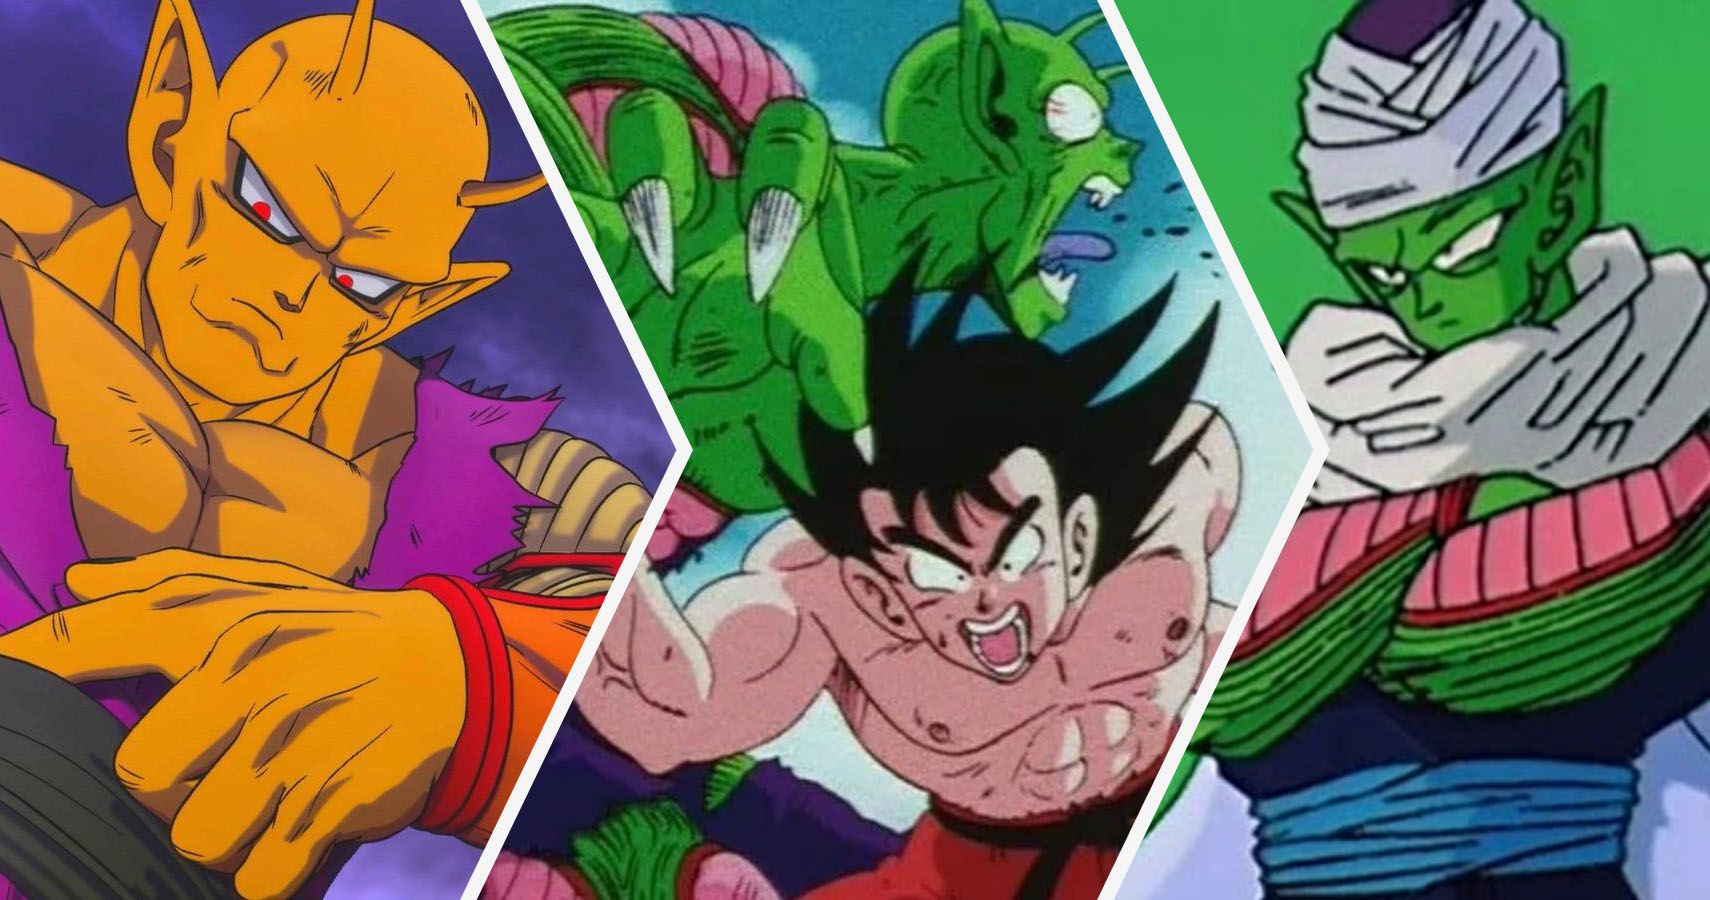 Orange Piccolo, Goku vs Piccolo, and Piccolo on Namek